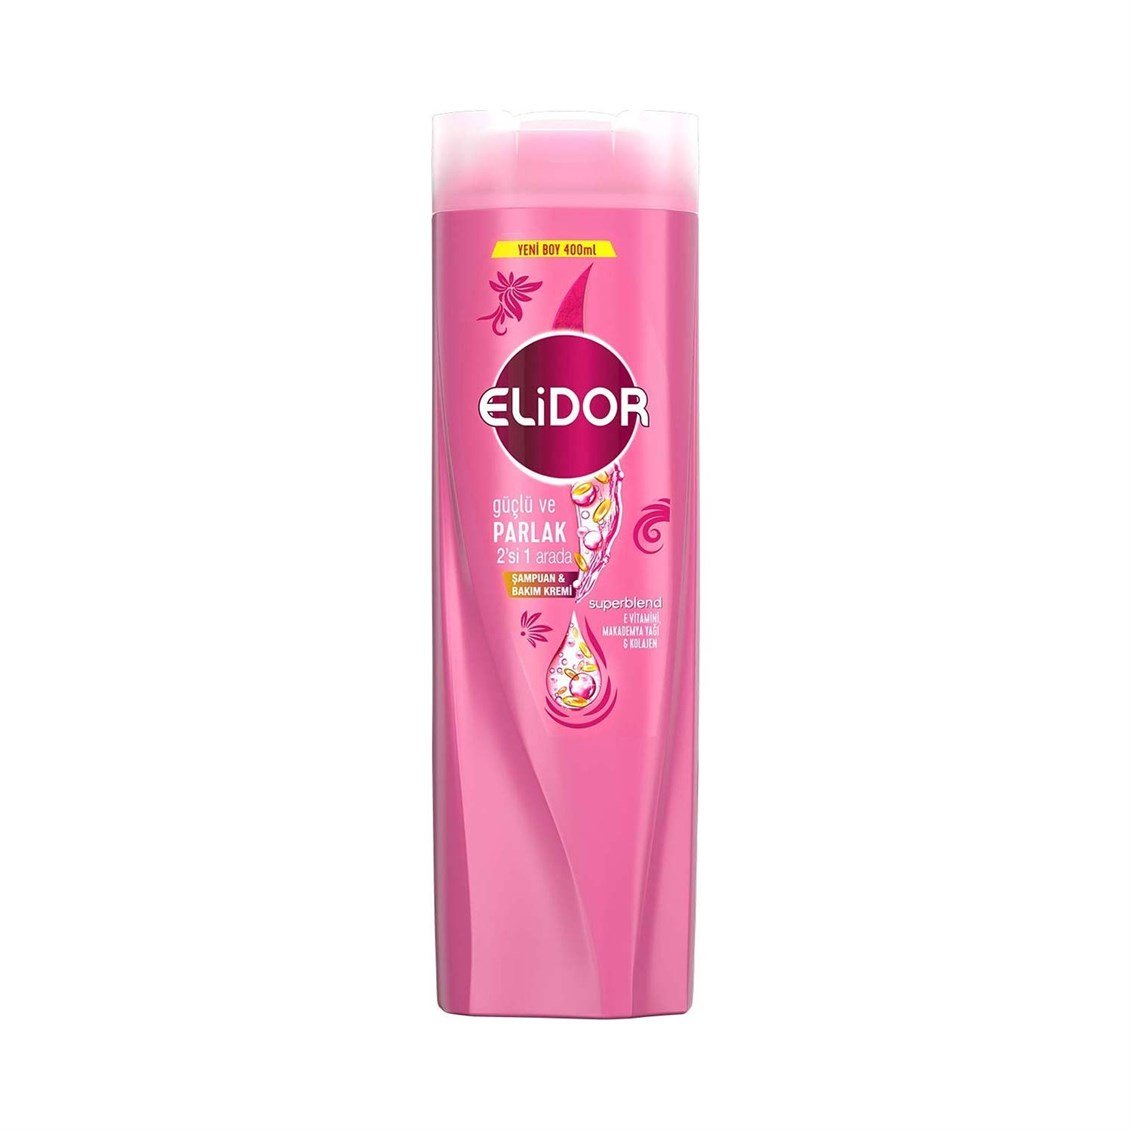 Elidor Şampuan Superblend 2'si 1 Arada Güçlü ve Parlak 400 ml - Onur Market